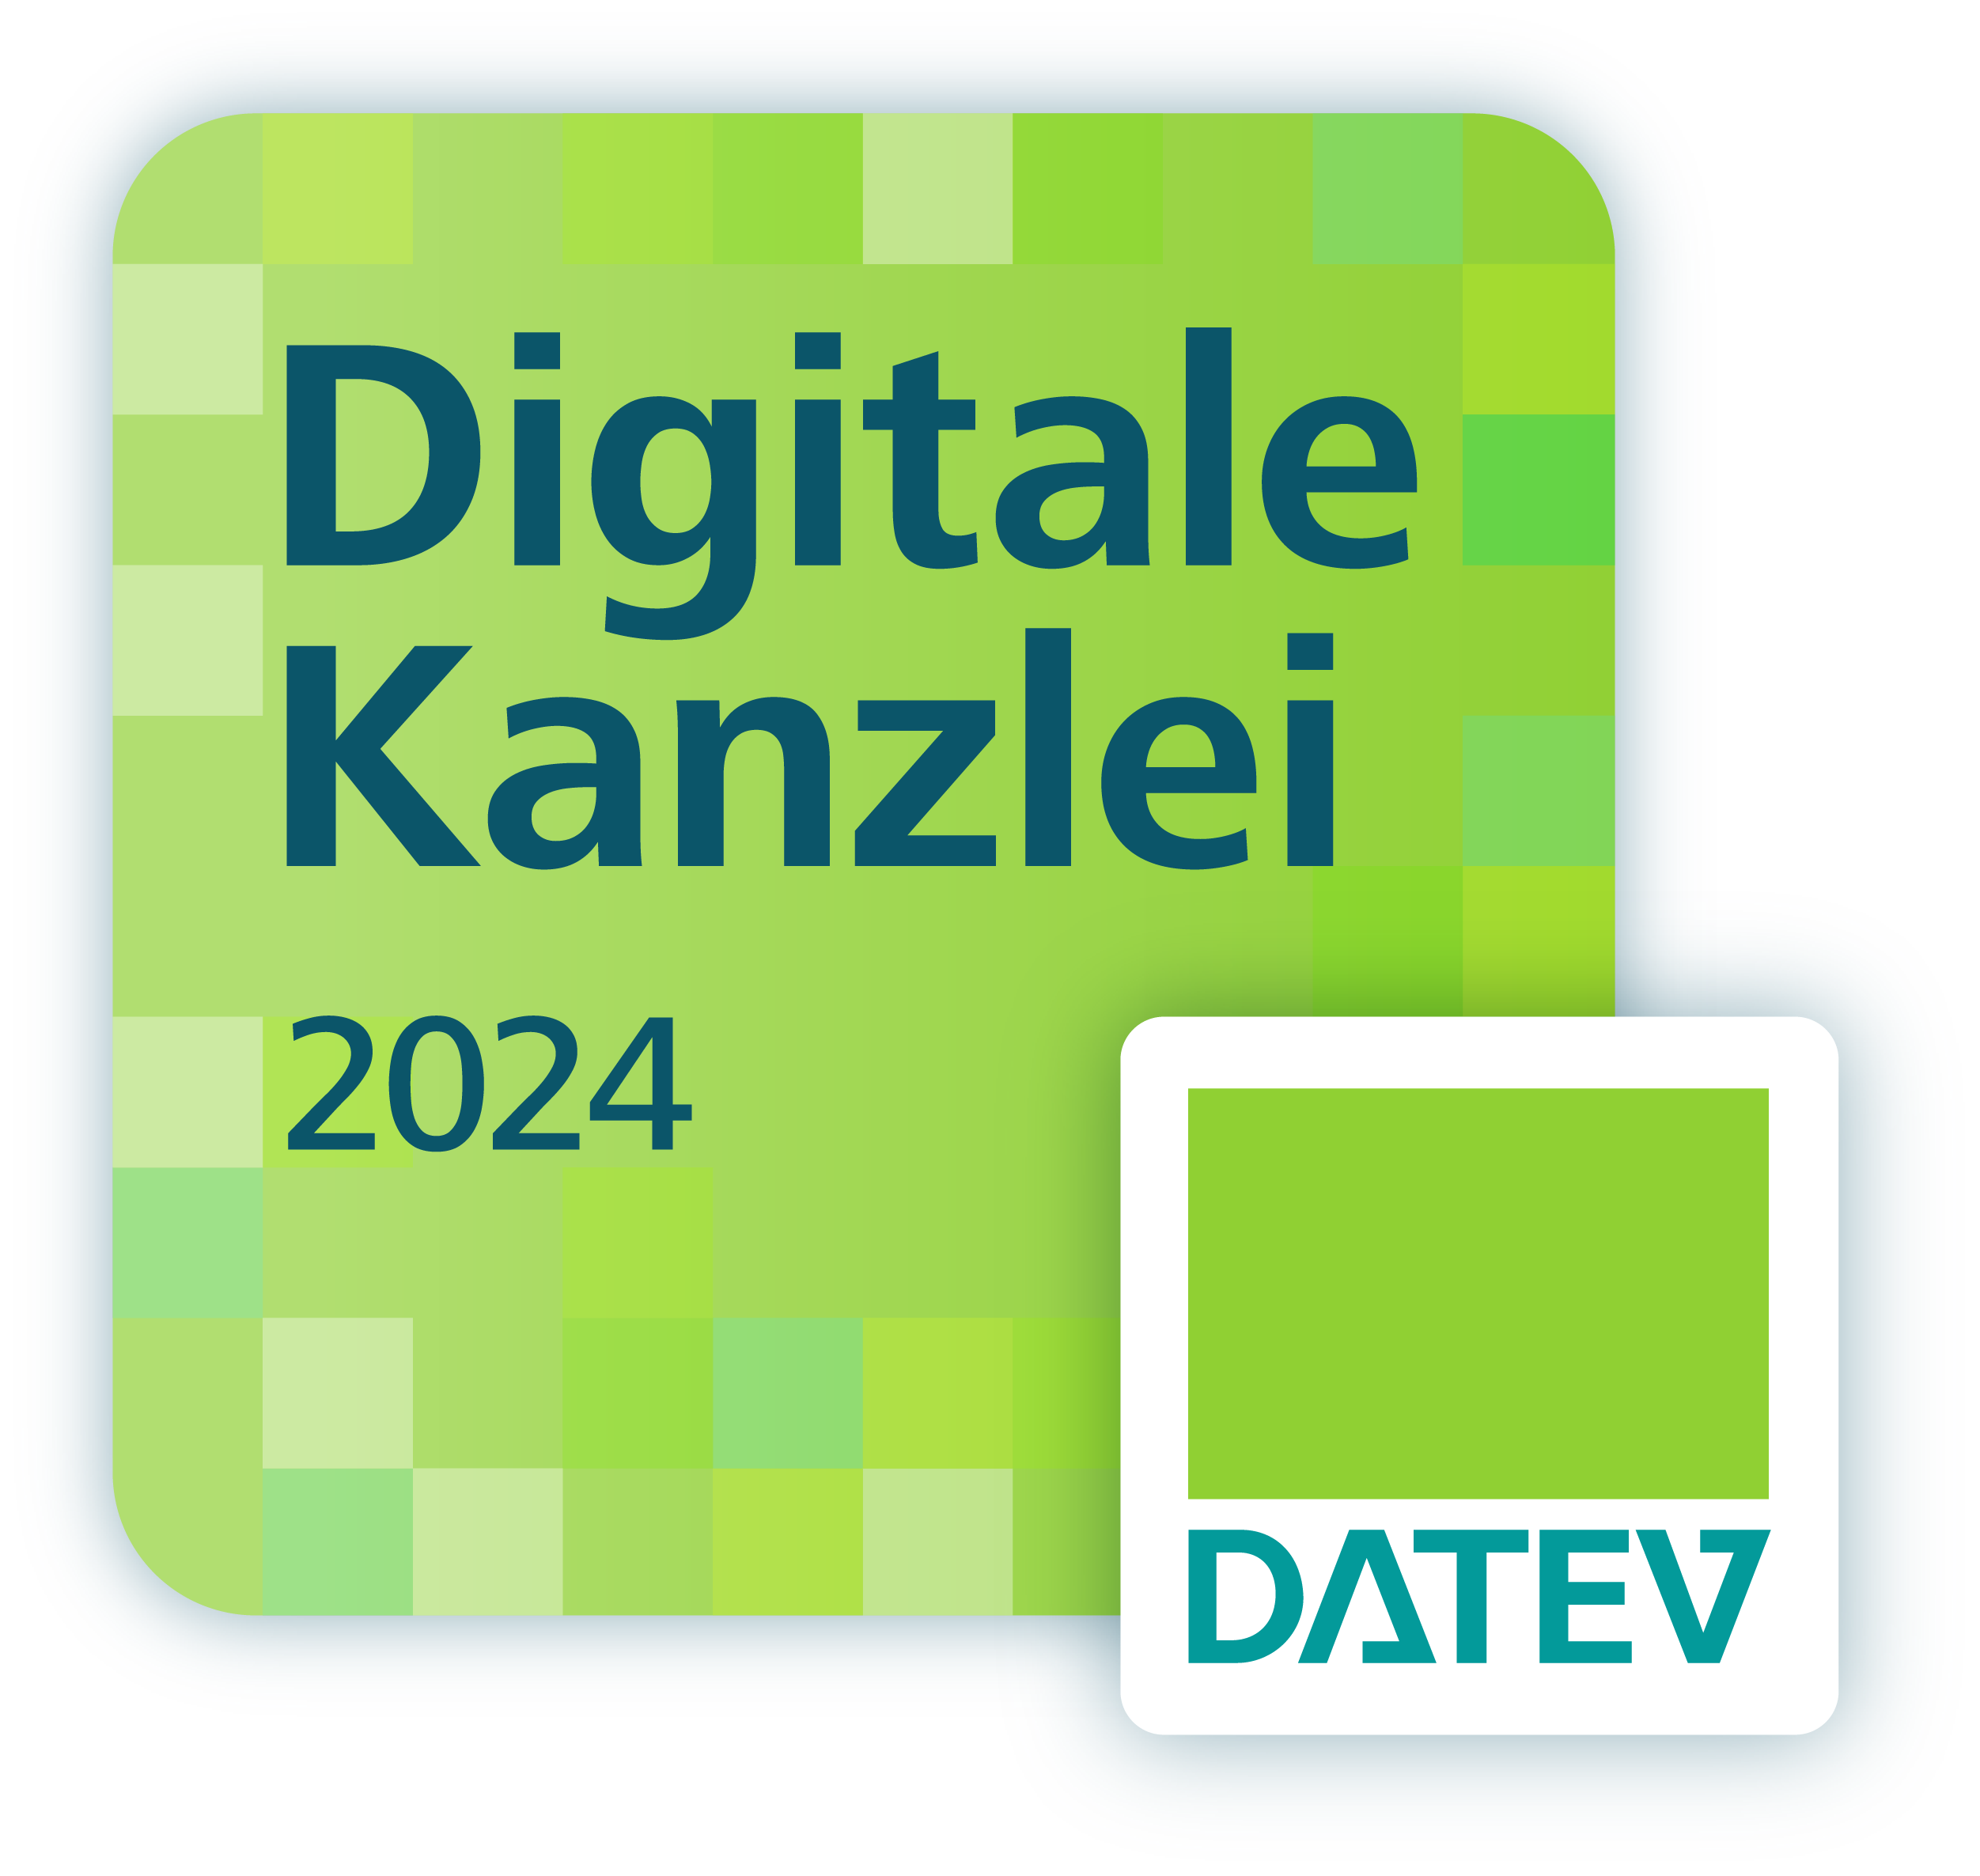 Digitale Kanzlei 2021 Steurat Benzheim